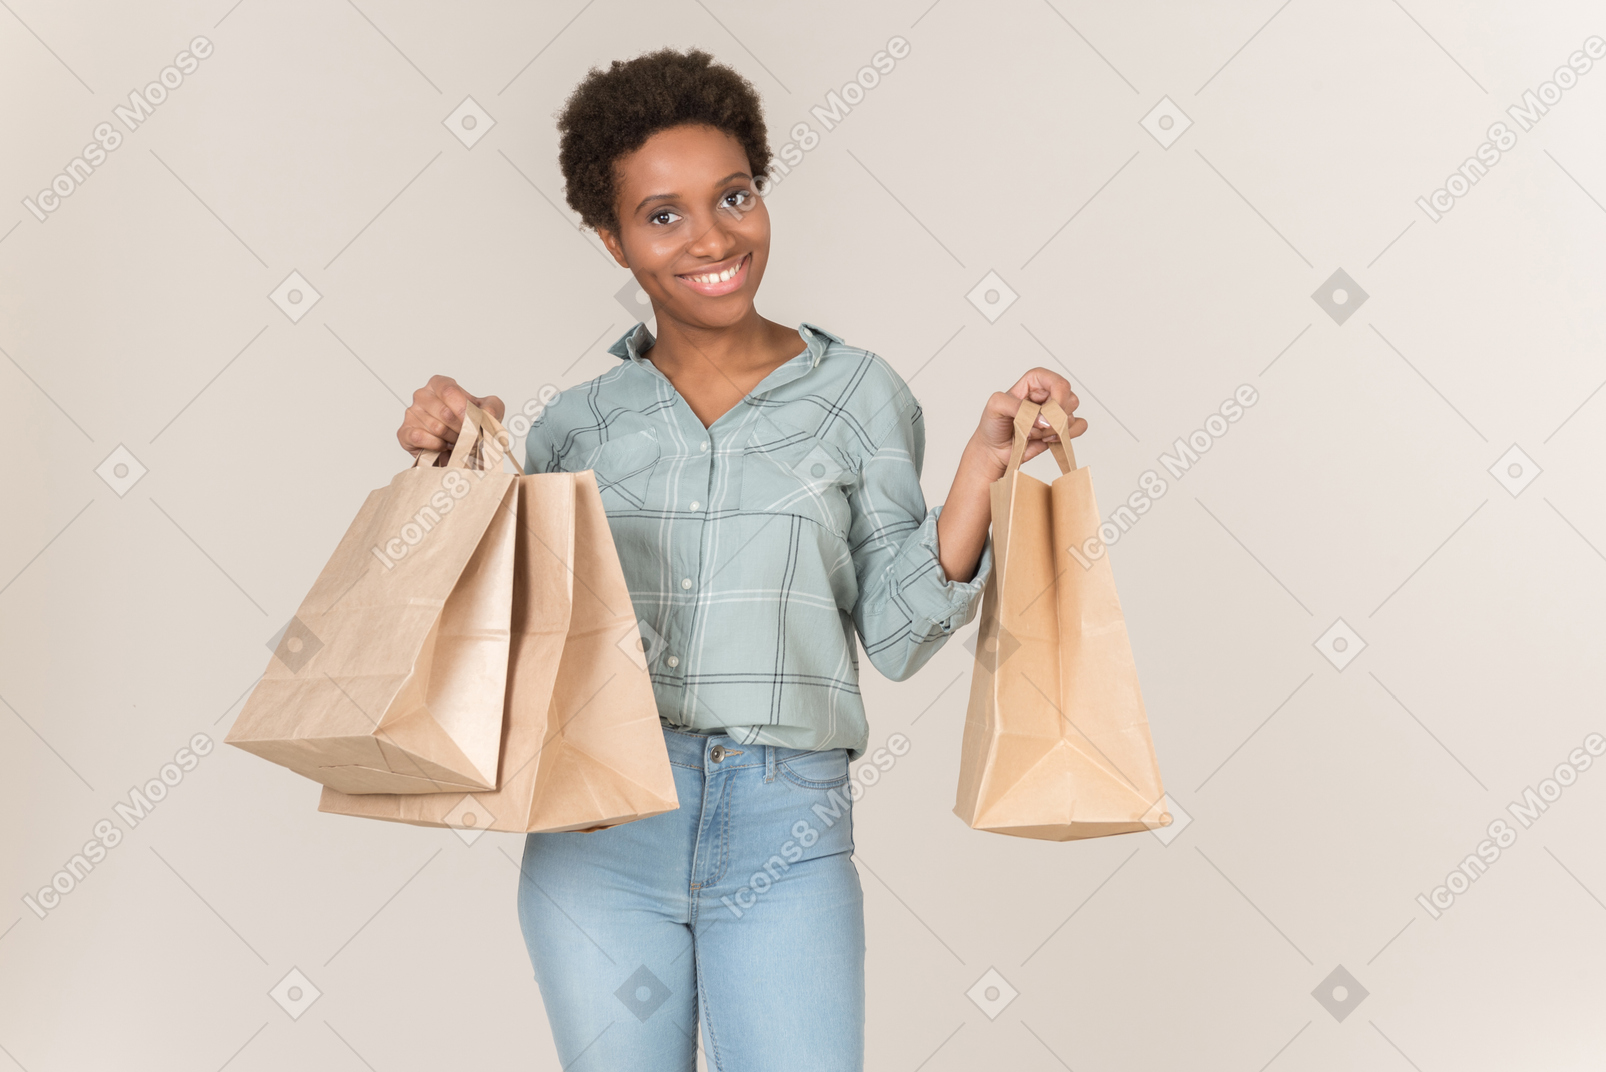 Giovane donna afro sorridente che tiene i sacchi di carta